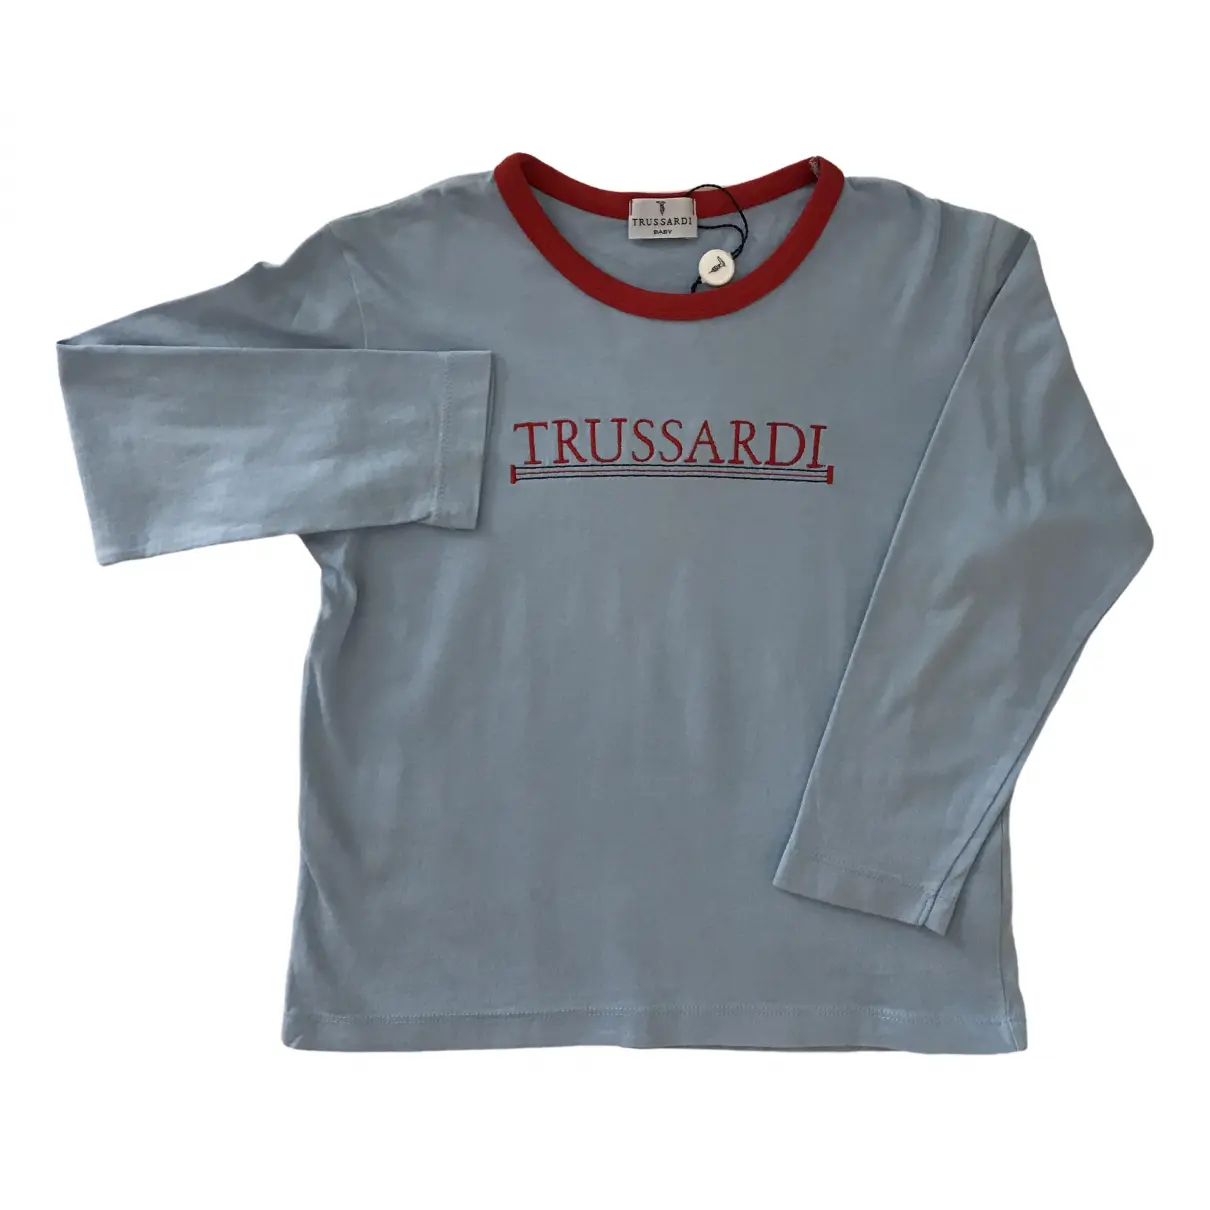 Knitwear Trussardi